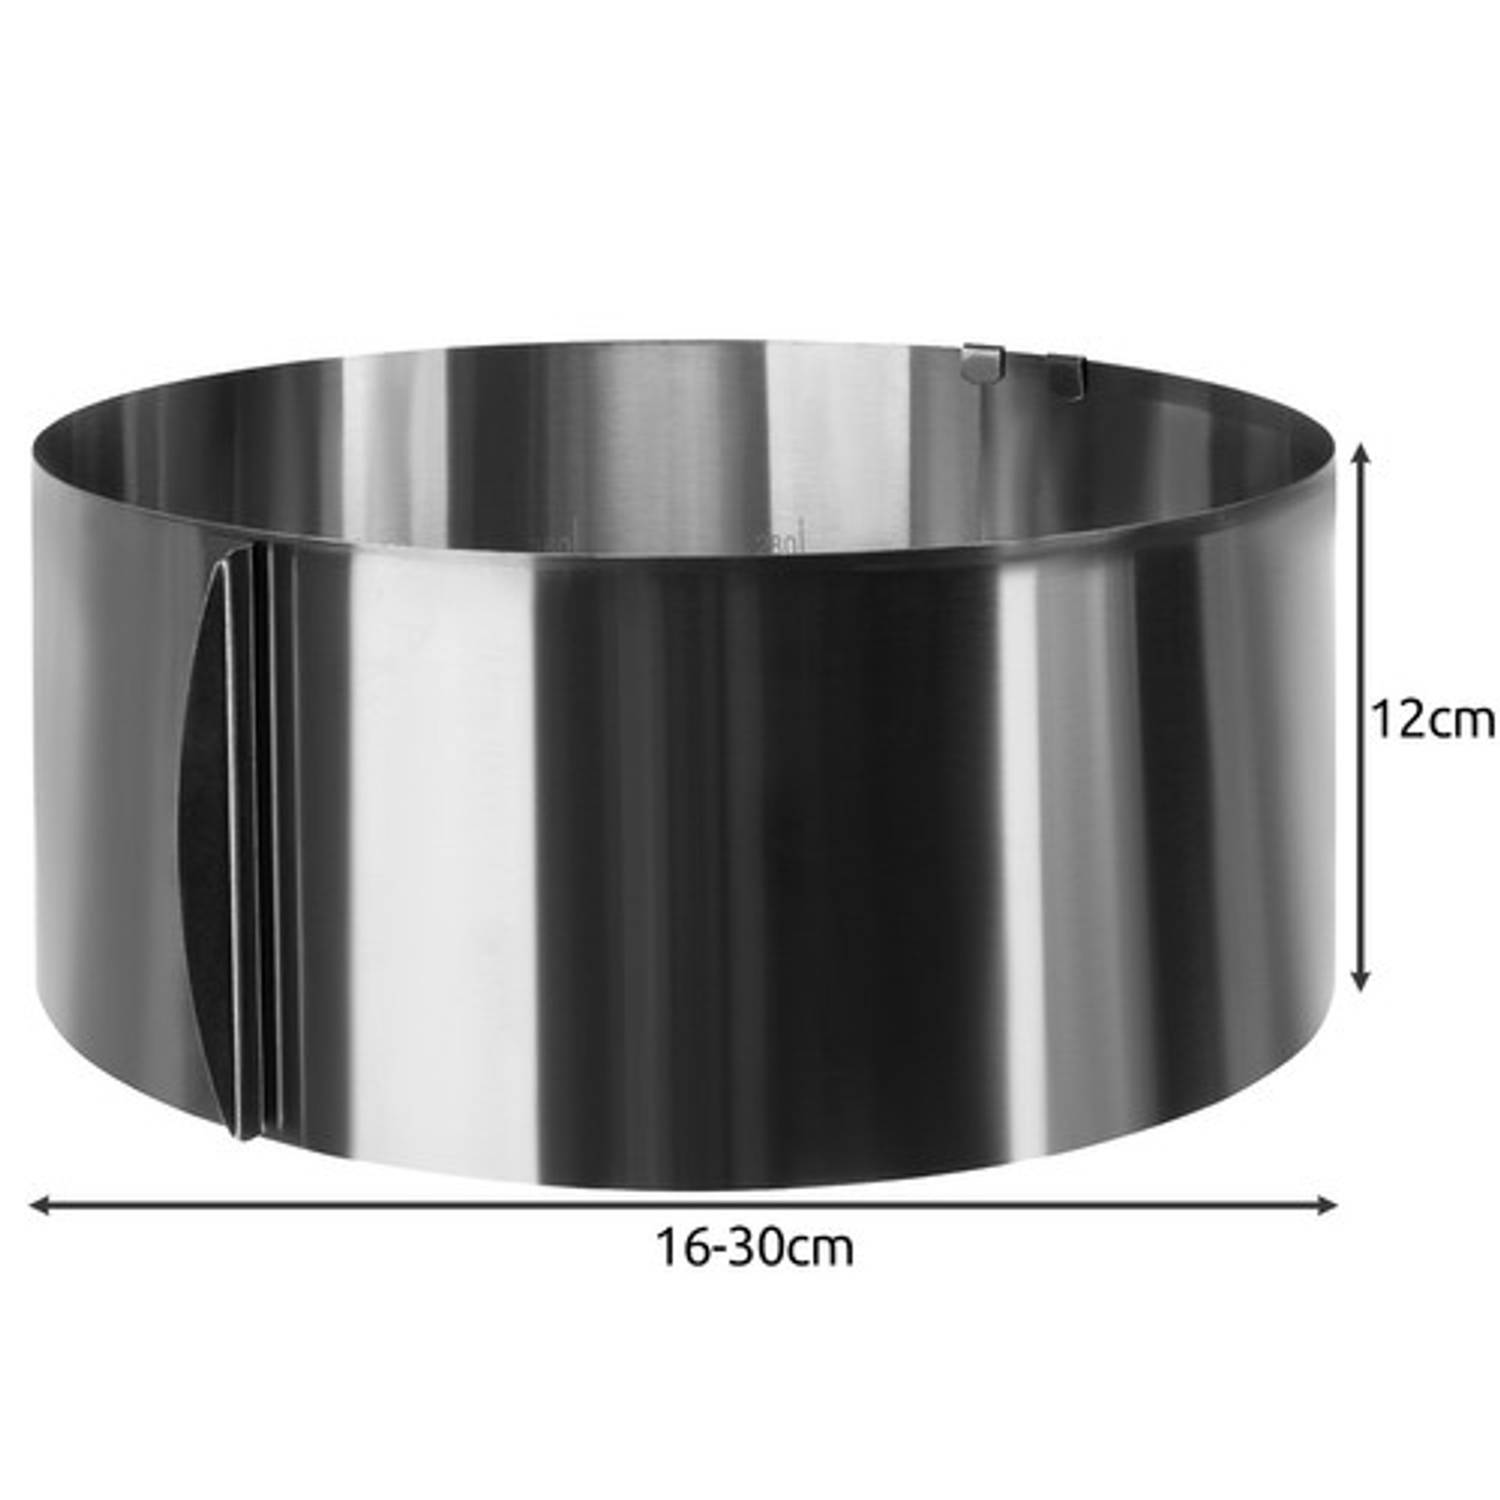 Verstelbare bakvorm/ cakevorm voor zoet en hartig Bak ring - In diameter verstelbaar van 16 tot 30 cm - Zilver | Blokker